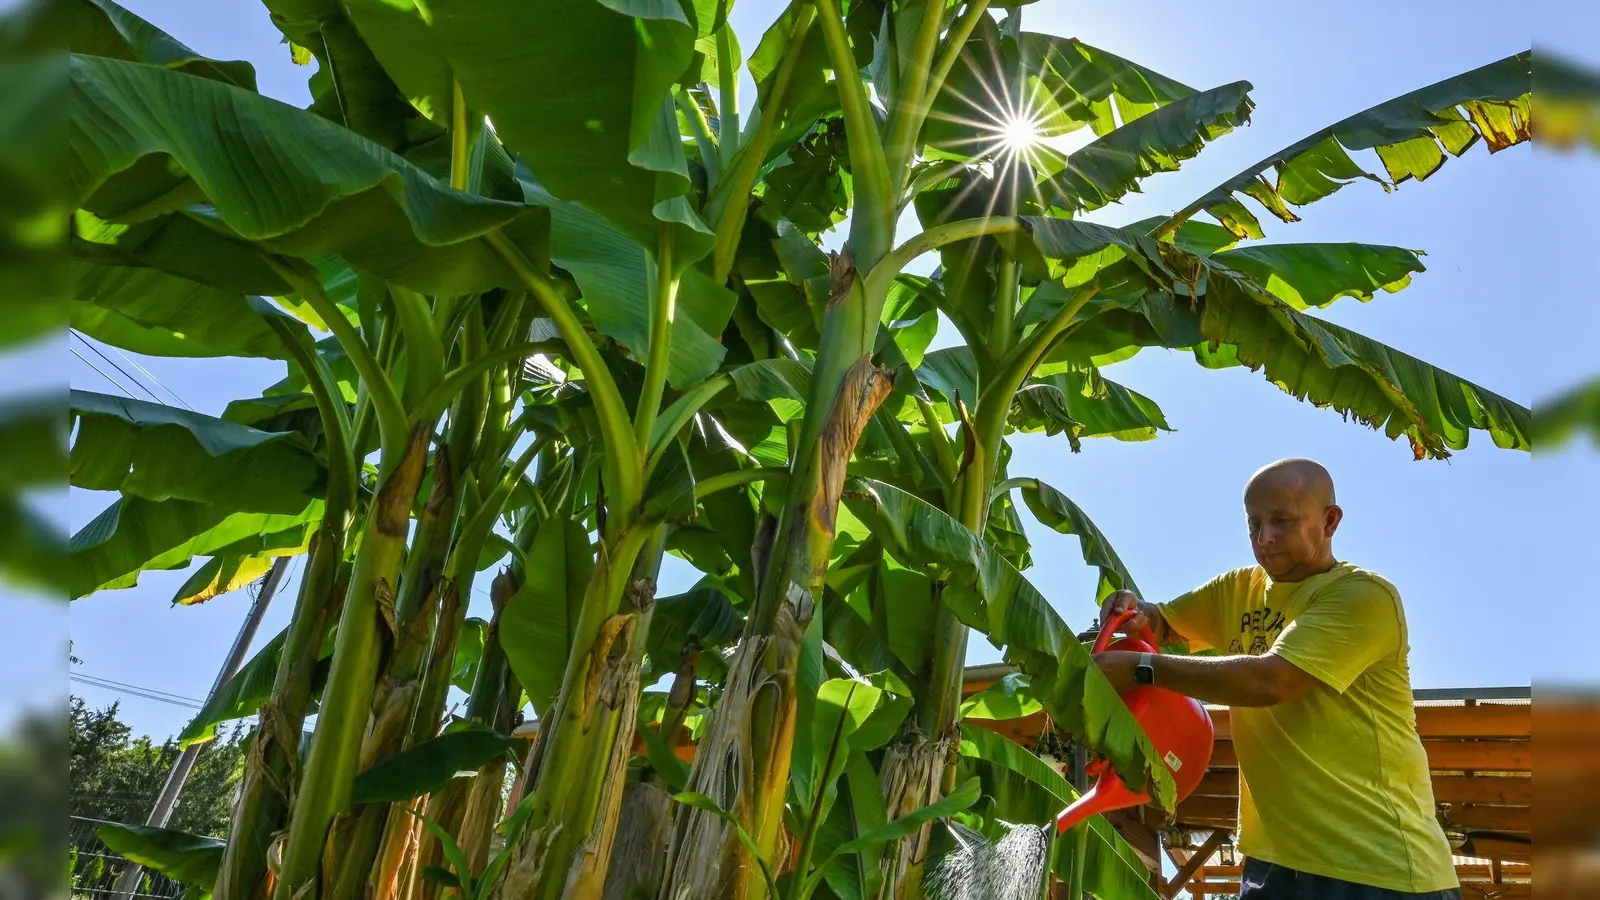 Exoten in unseren Gärten: Werden Bananenstauden hier etwa aufgrund des Klimawandels ein neues Zuhause finden? (Foto: Patrick Pleul/dpa/dpa-tmn)